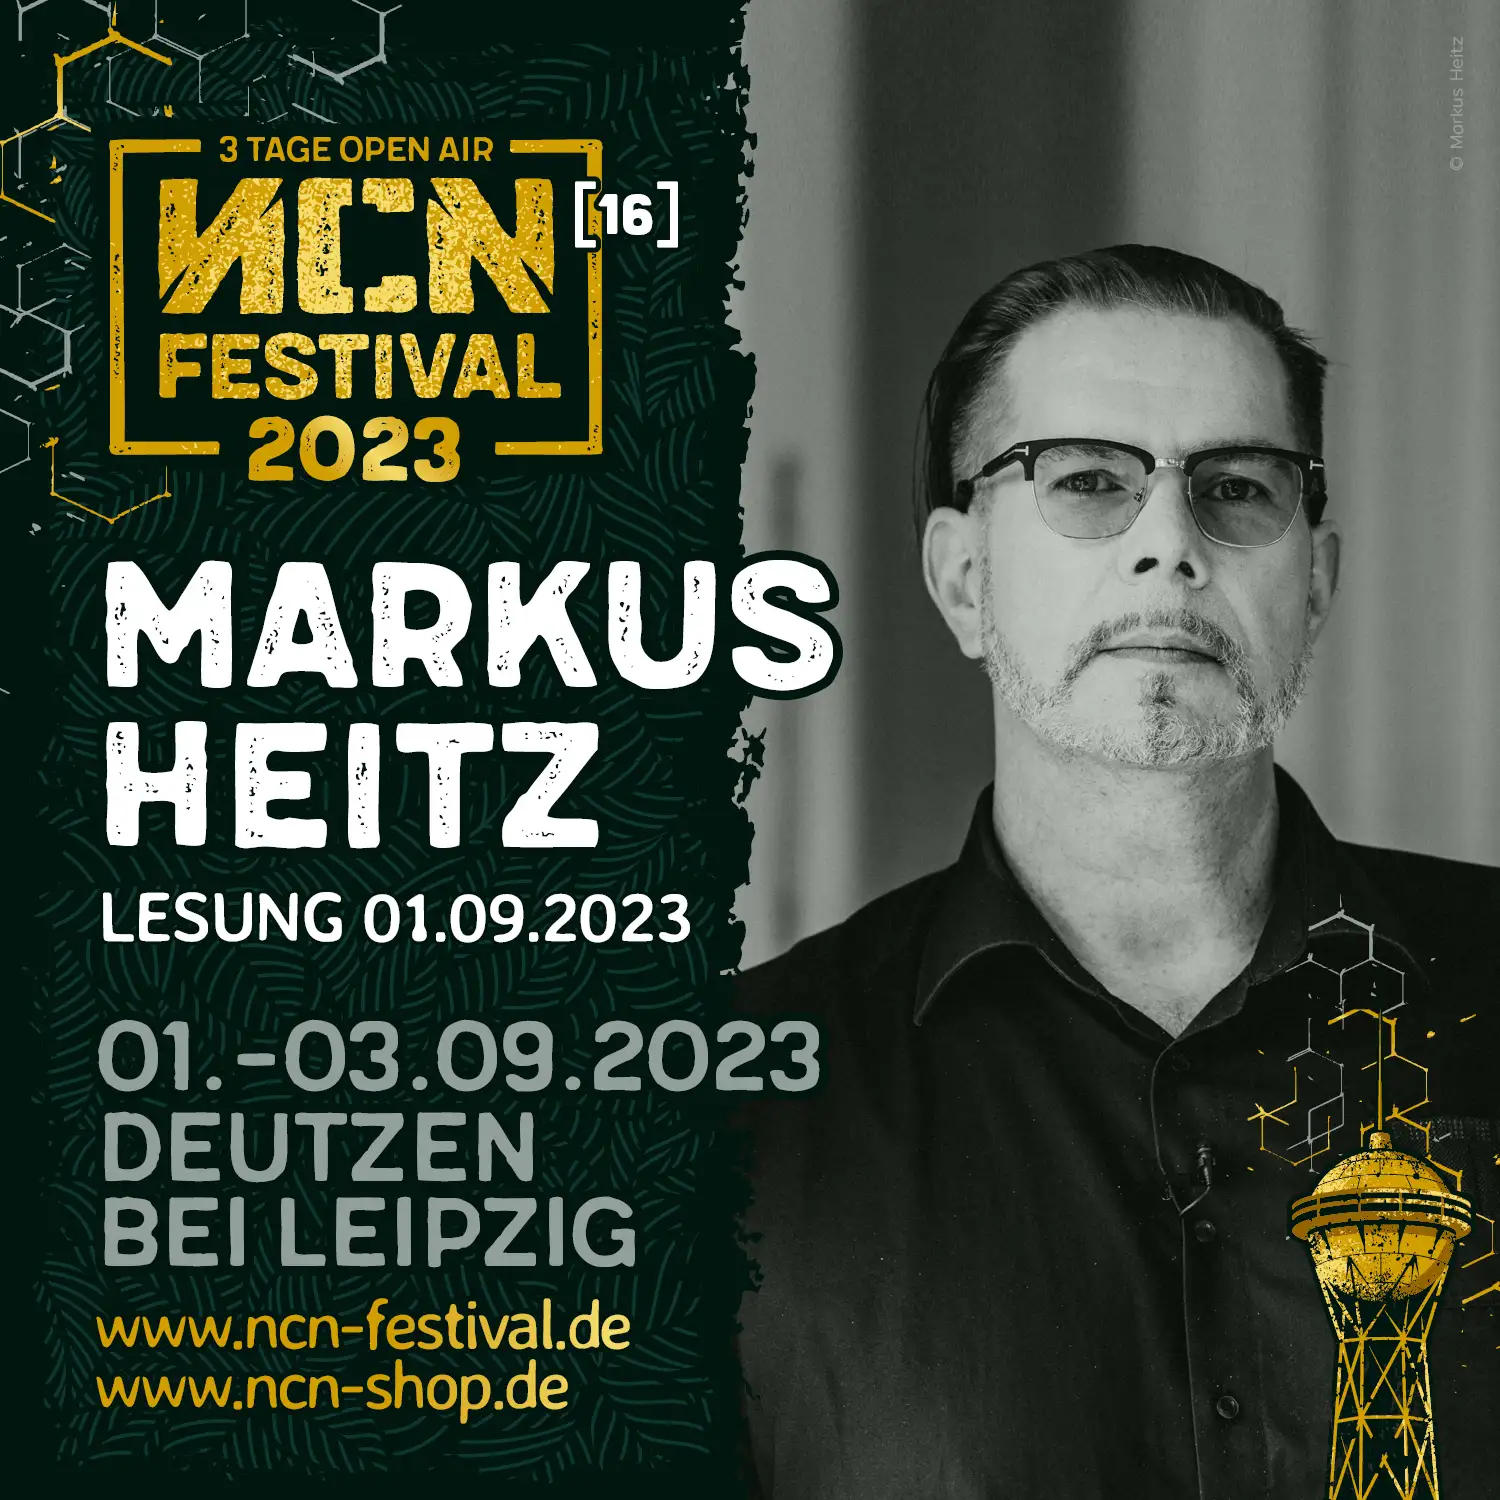 Markus Heitz